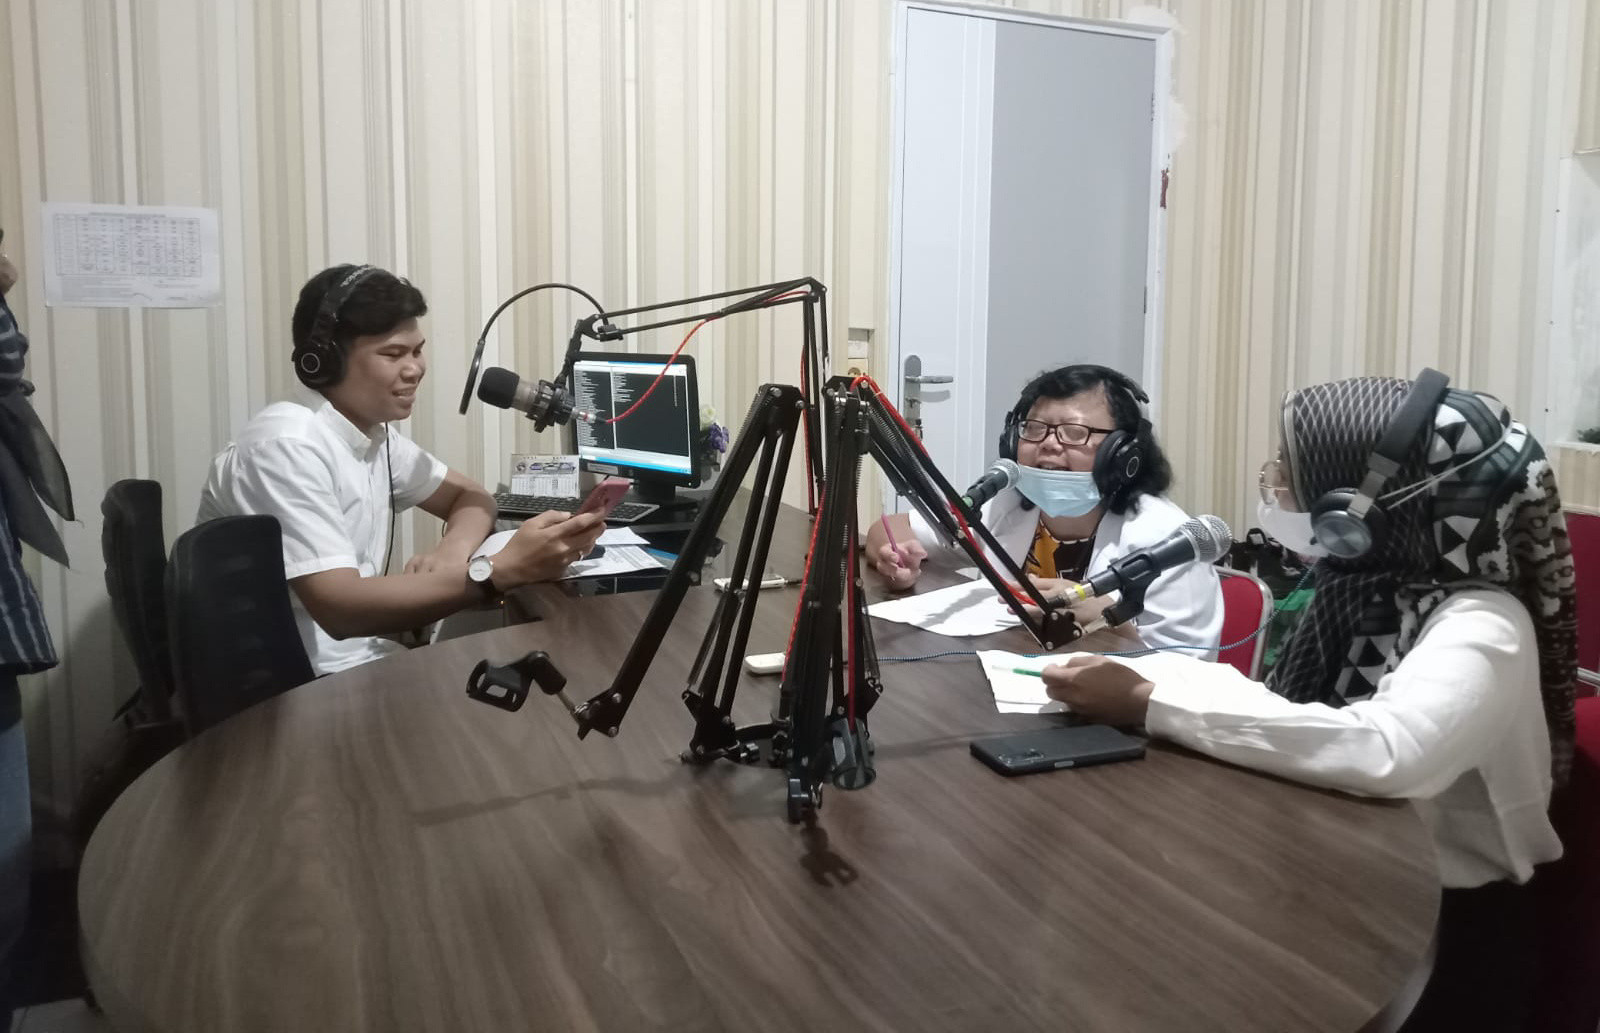 RSUD PH Tembilahan, Bincang Santai Tentang Dampak Negatif Narkoba Di Radio Gemilang FM